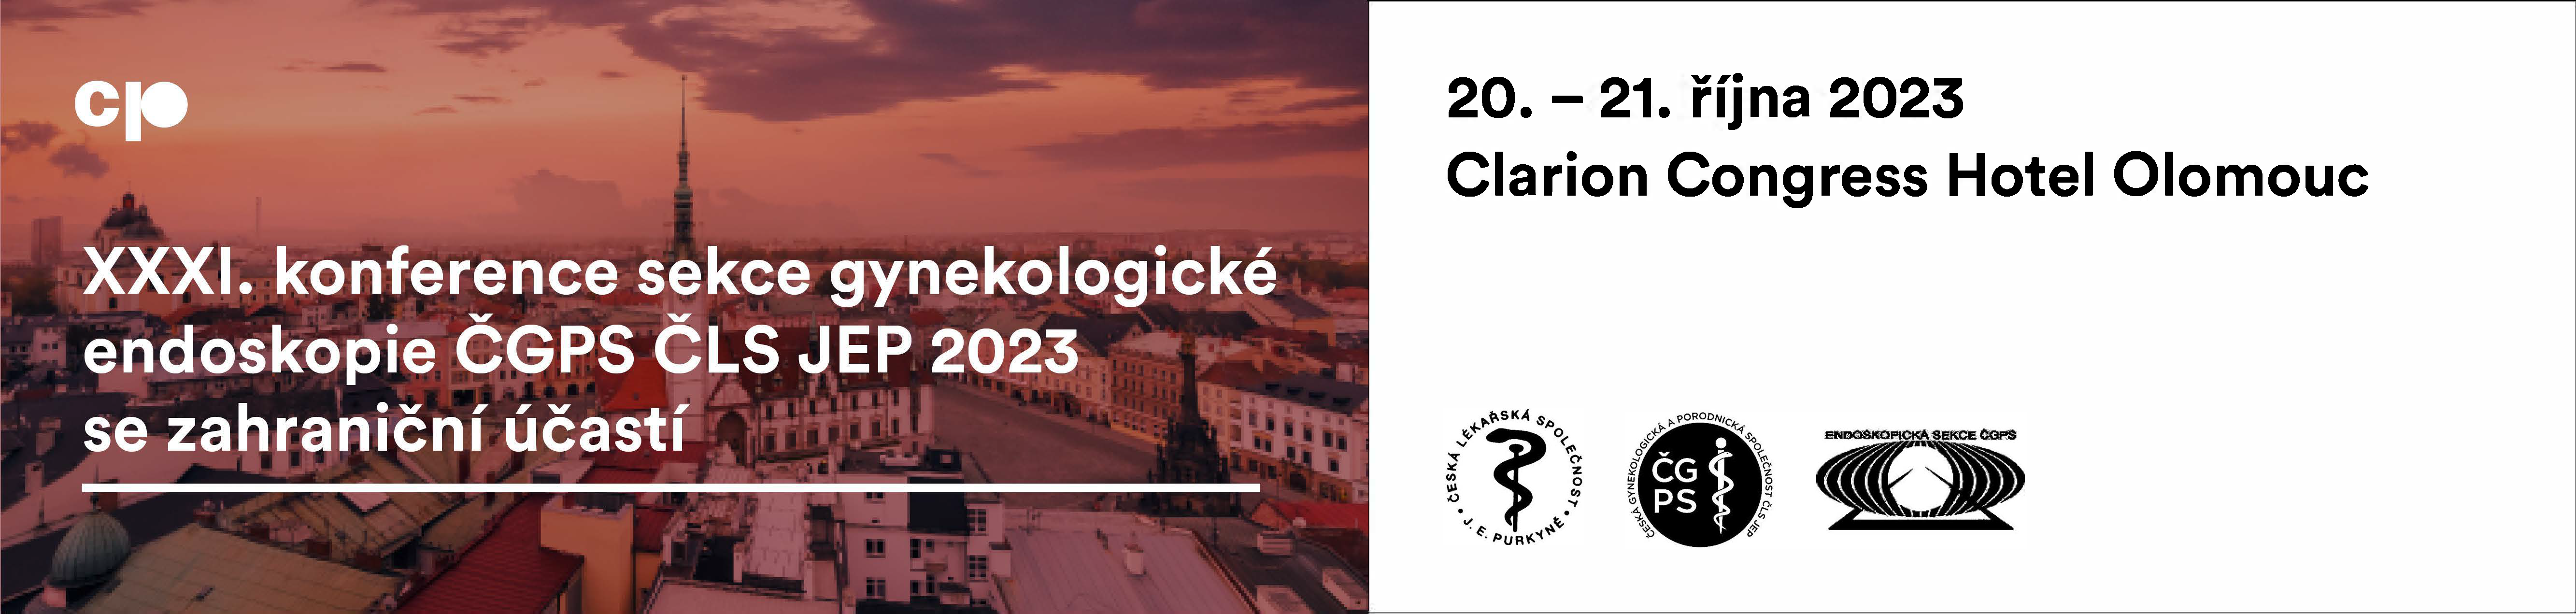 XXXI. konference sekce gynekologické endoskopie ČGPS ČLS JEP 2023 se zahraniční účastí